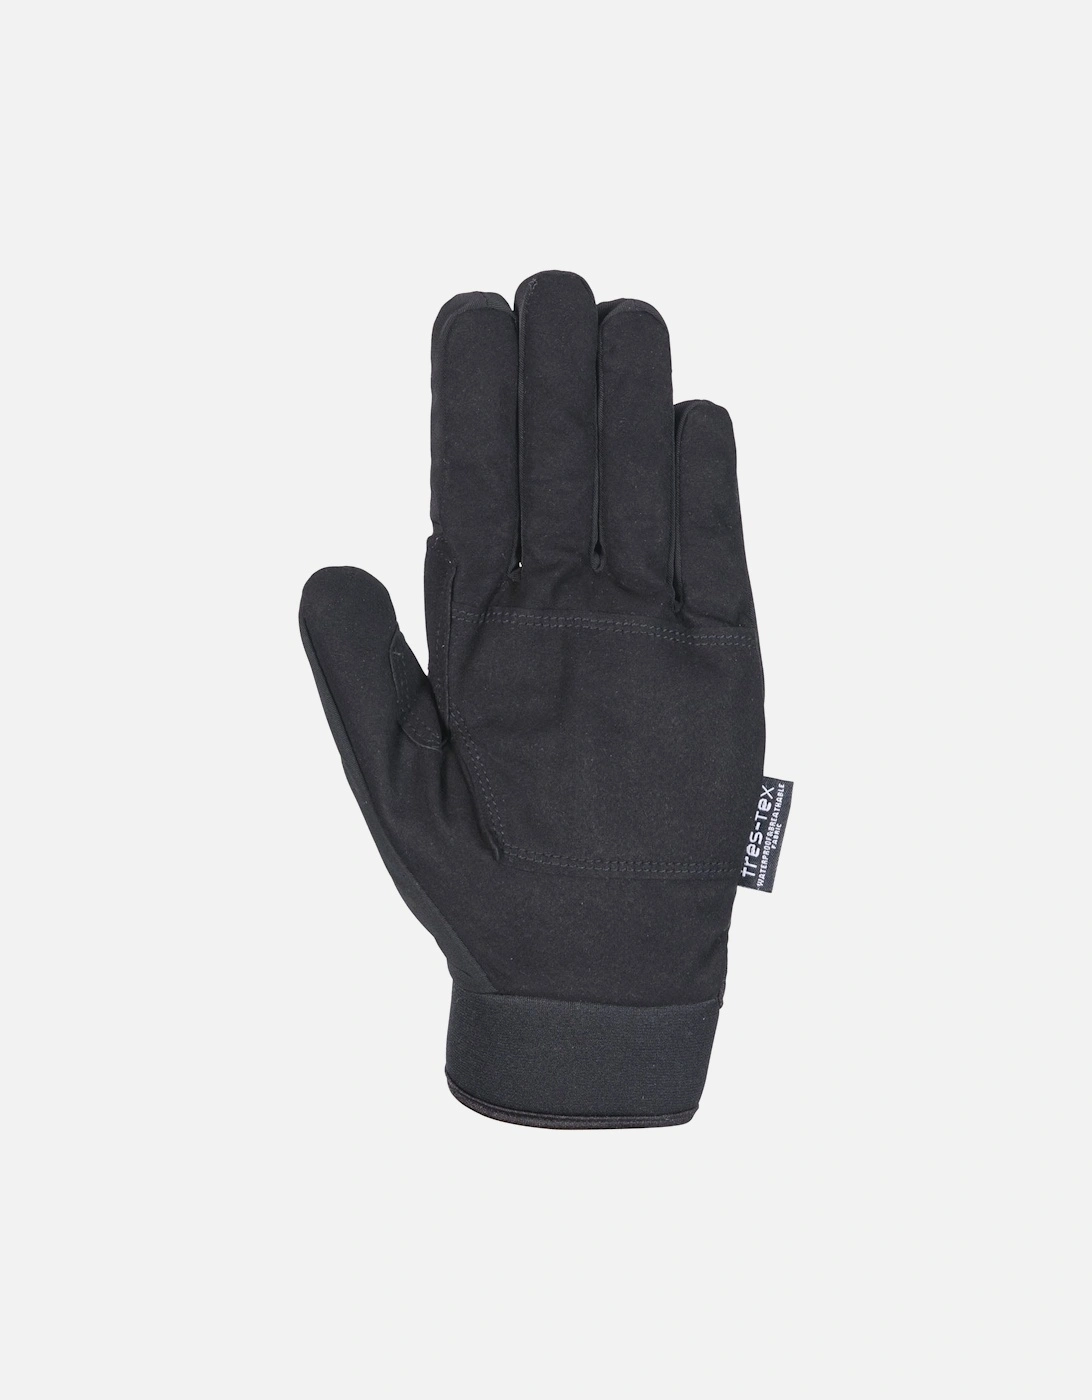 Adults Cruzado Waterproof Gloves - Black